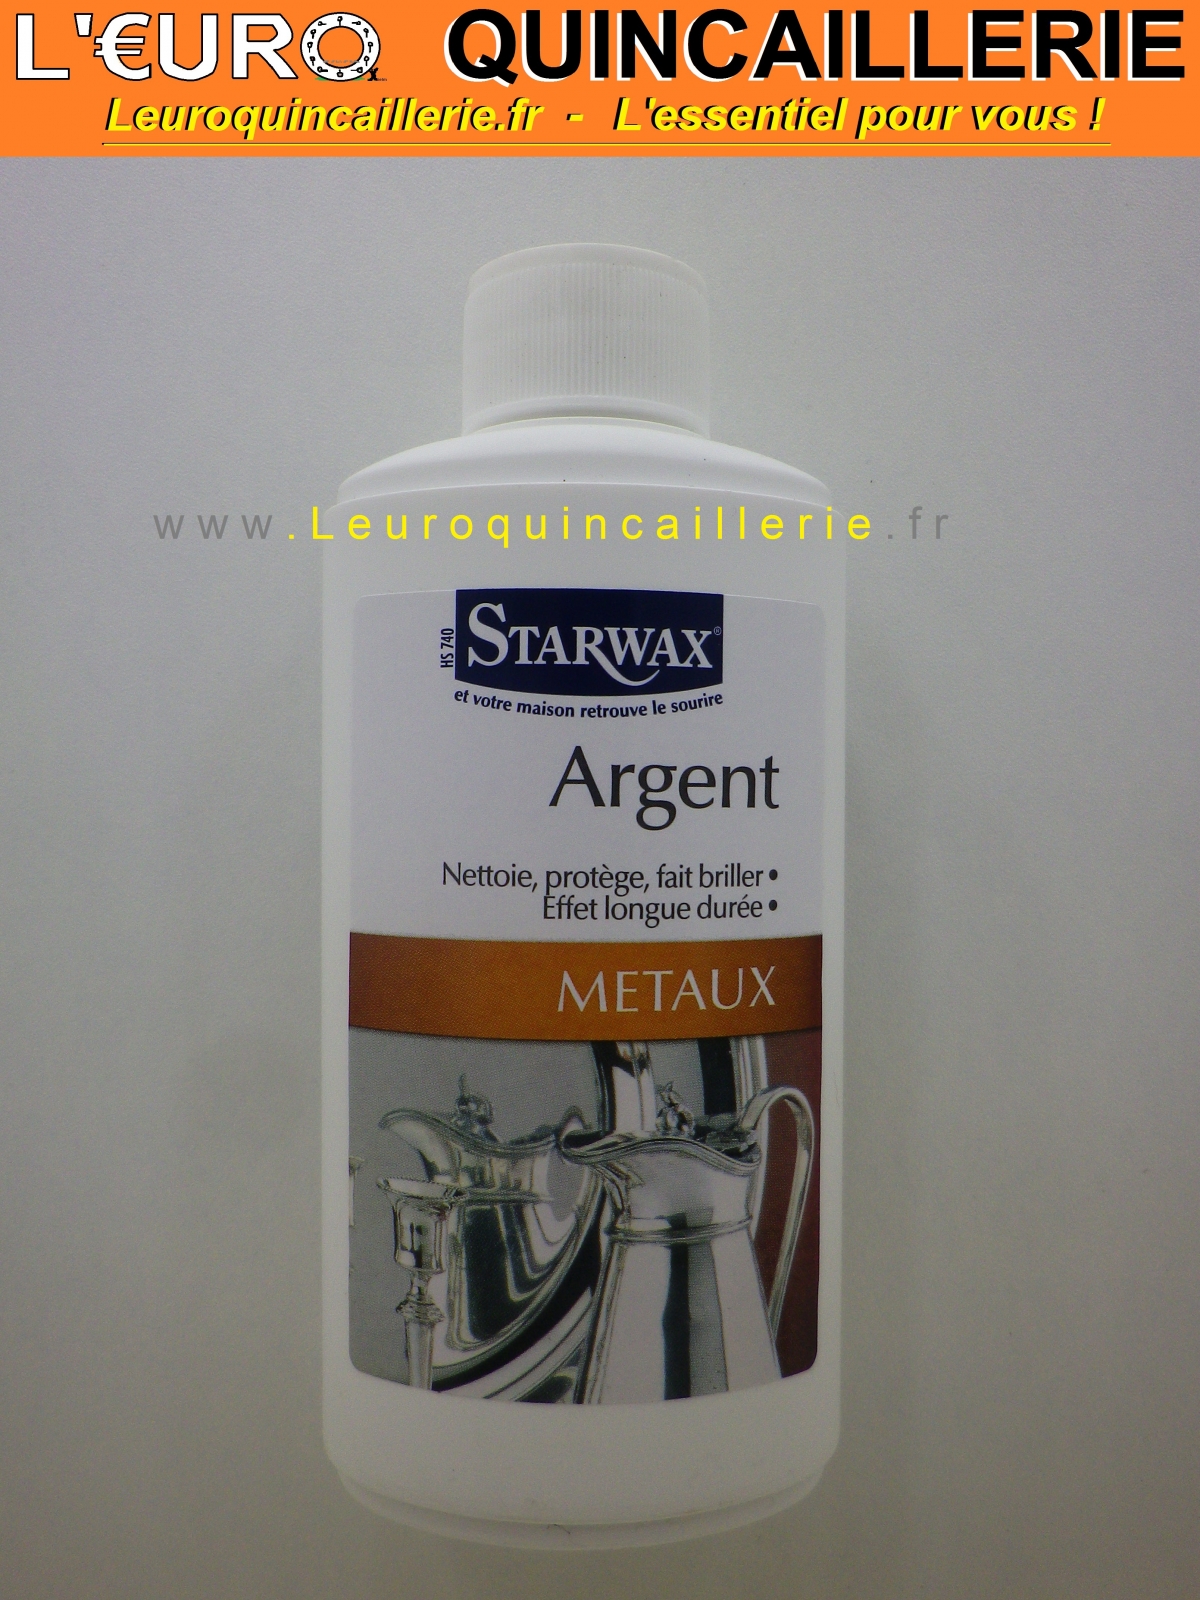 NETTOYANT ARGENT STARWAX METAUX